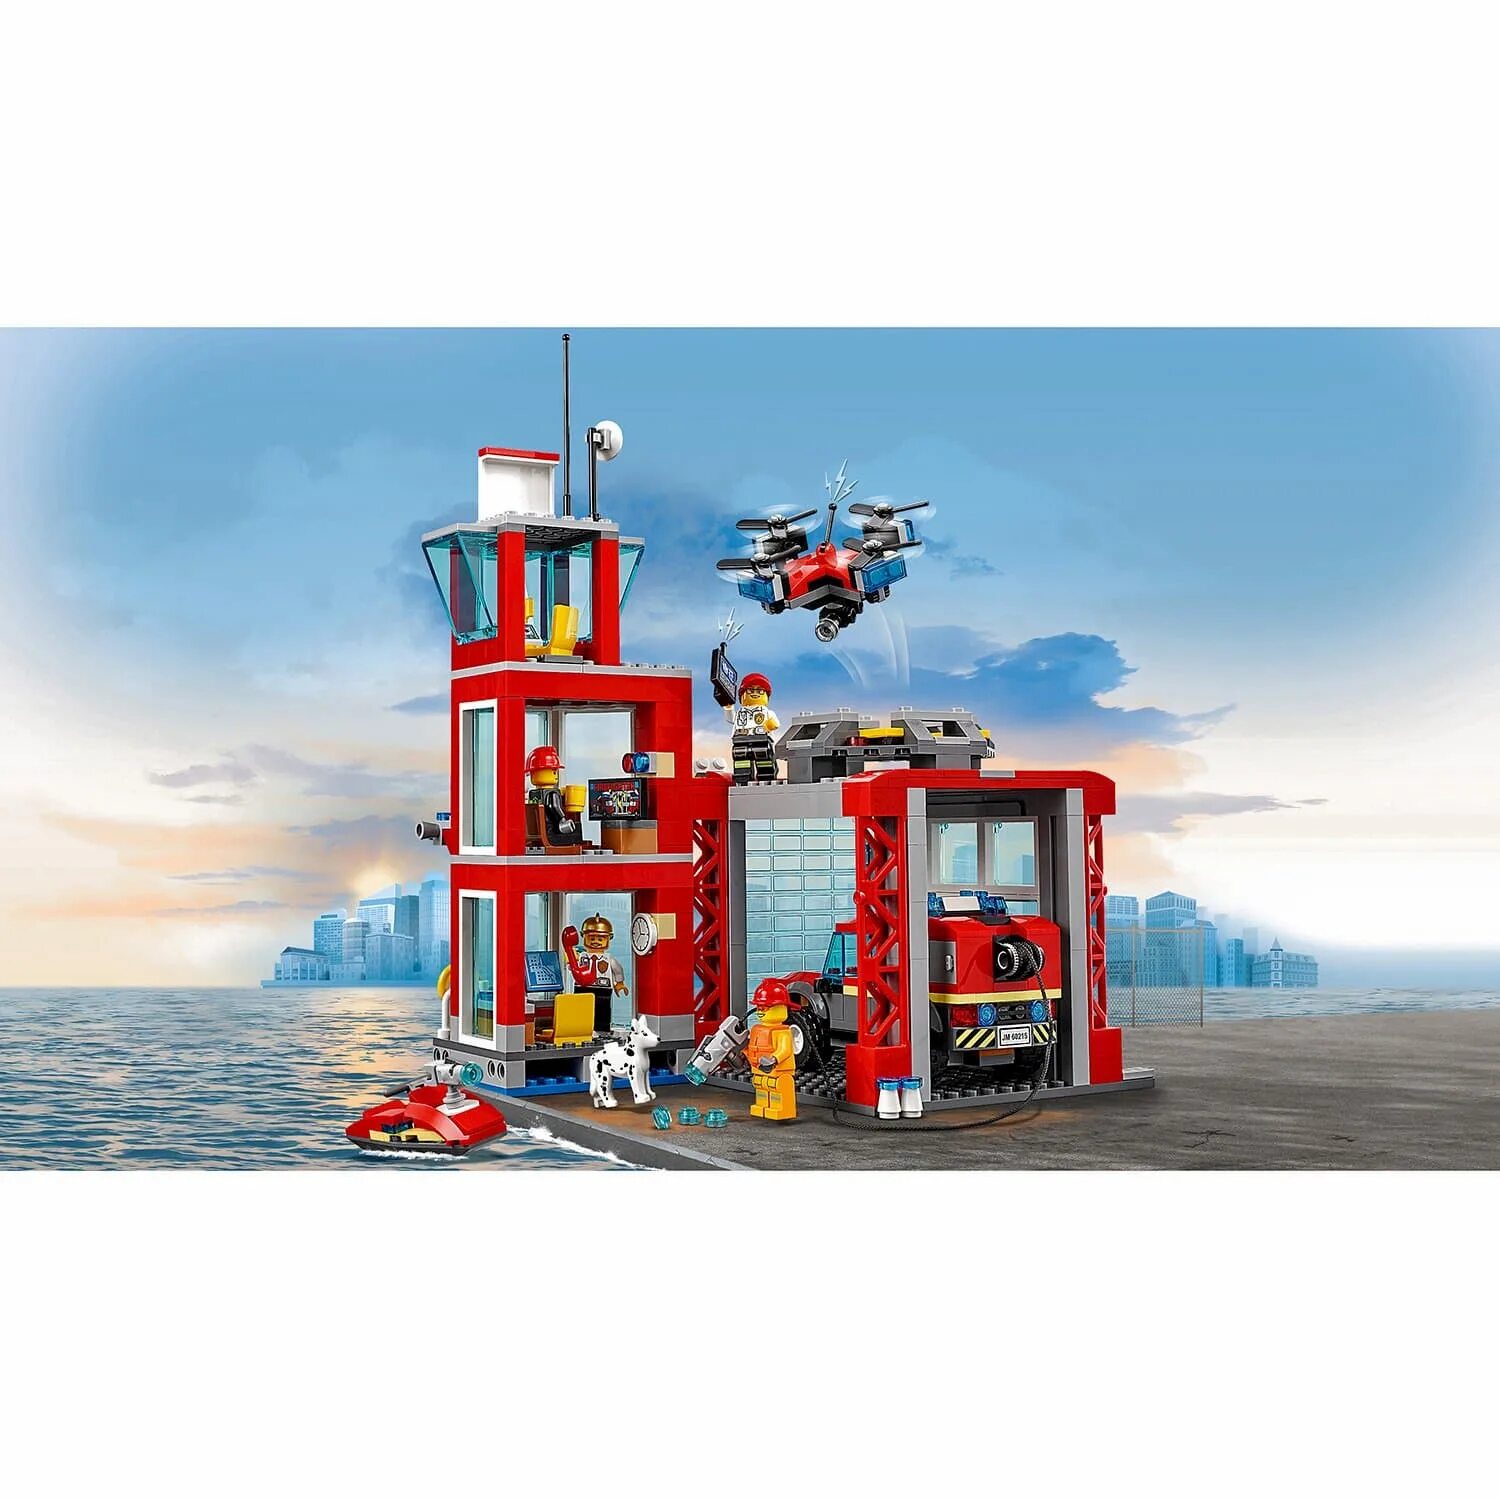 Сити пожарная. Конструктор LEGO City 60215 пожарное депо. Лего Сити пожарное депо 60215. LEGO / конструктор LEGO City 60215 пожарное депо. Конструктор LEGO City Fire 60215 пожарное депо.